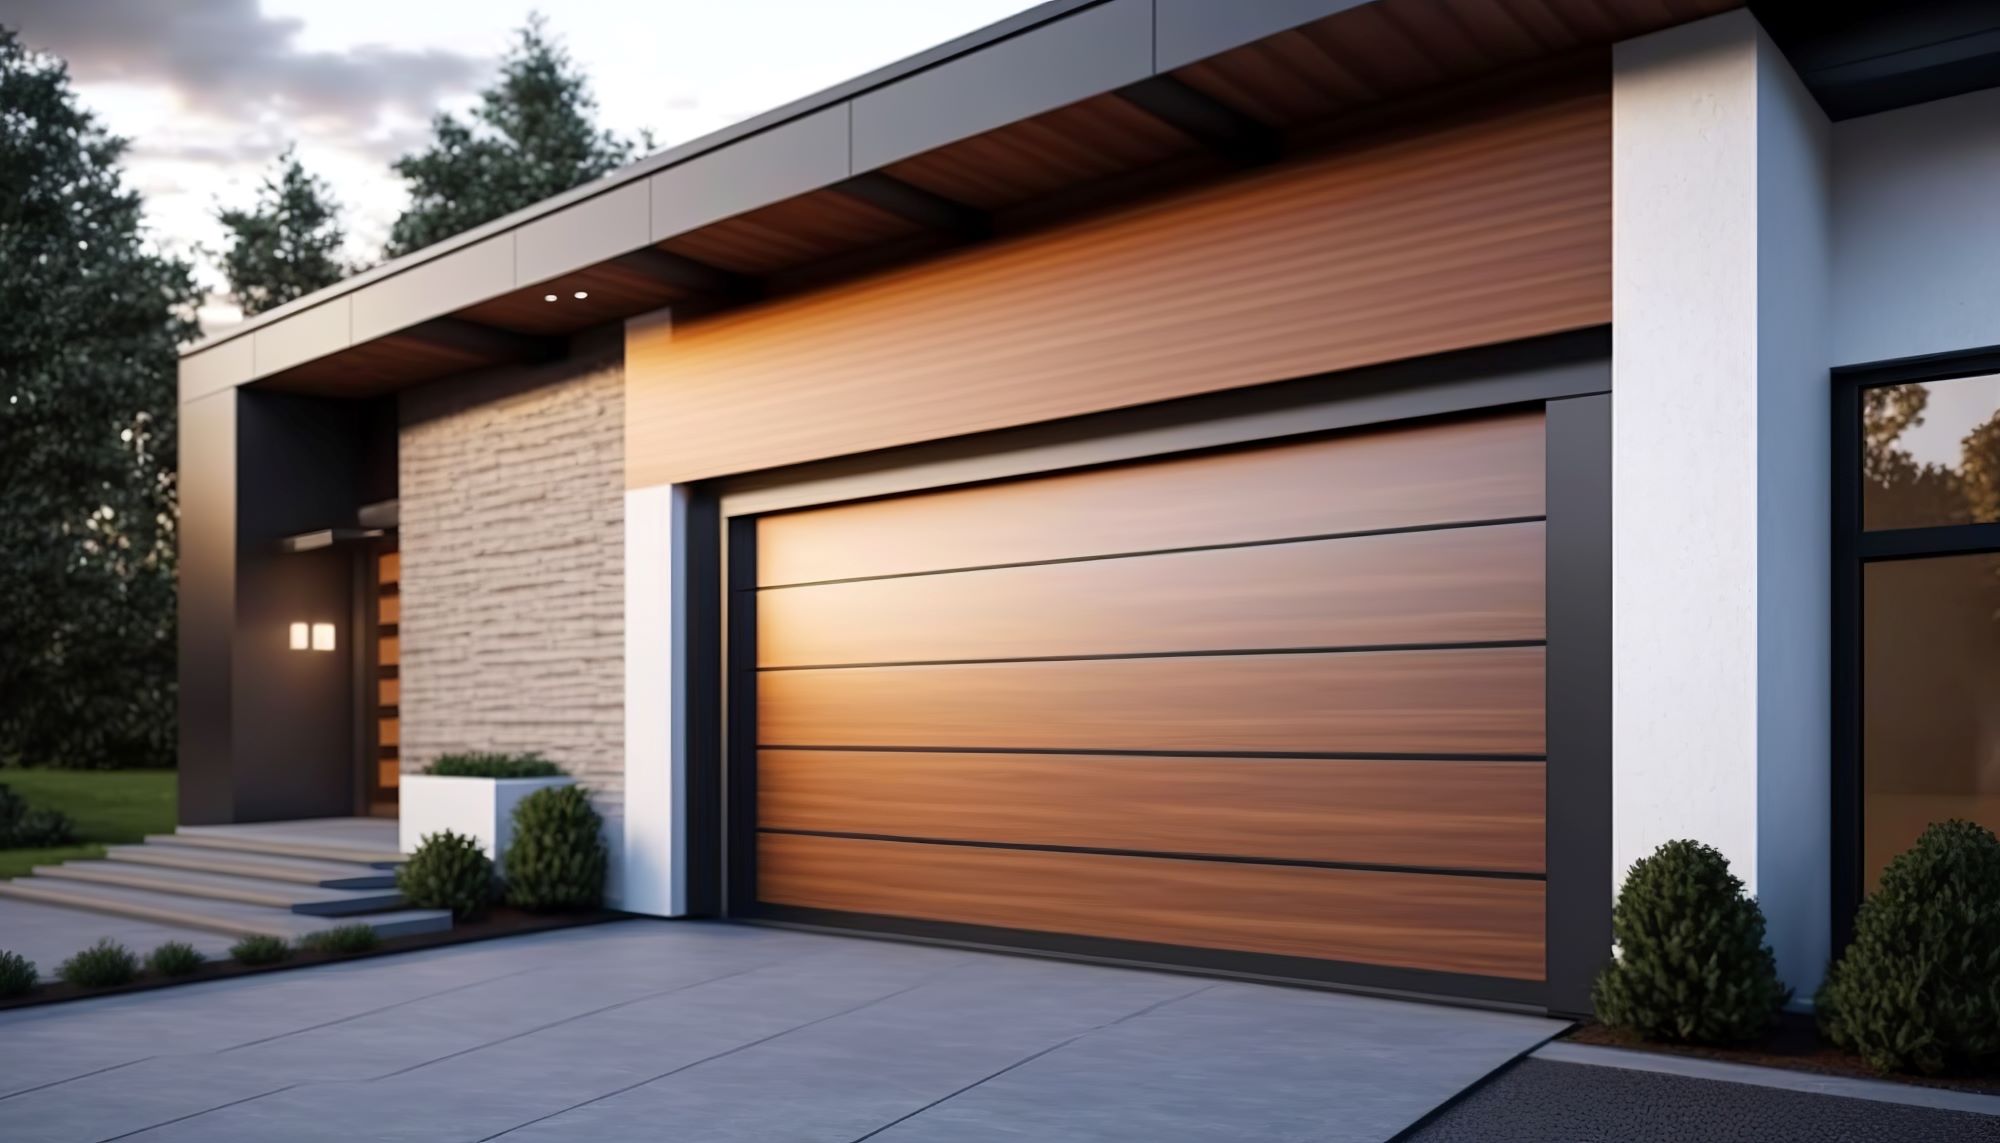 An Essential Guide To Custom Garage Door Materials